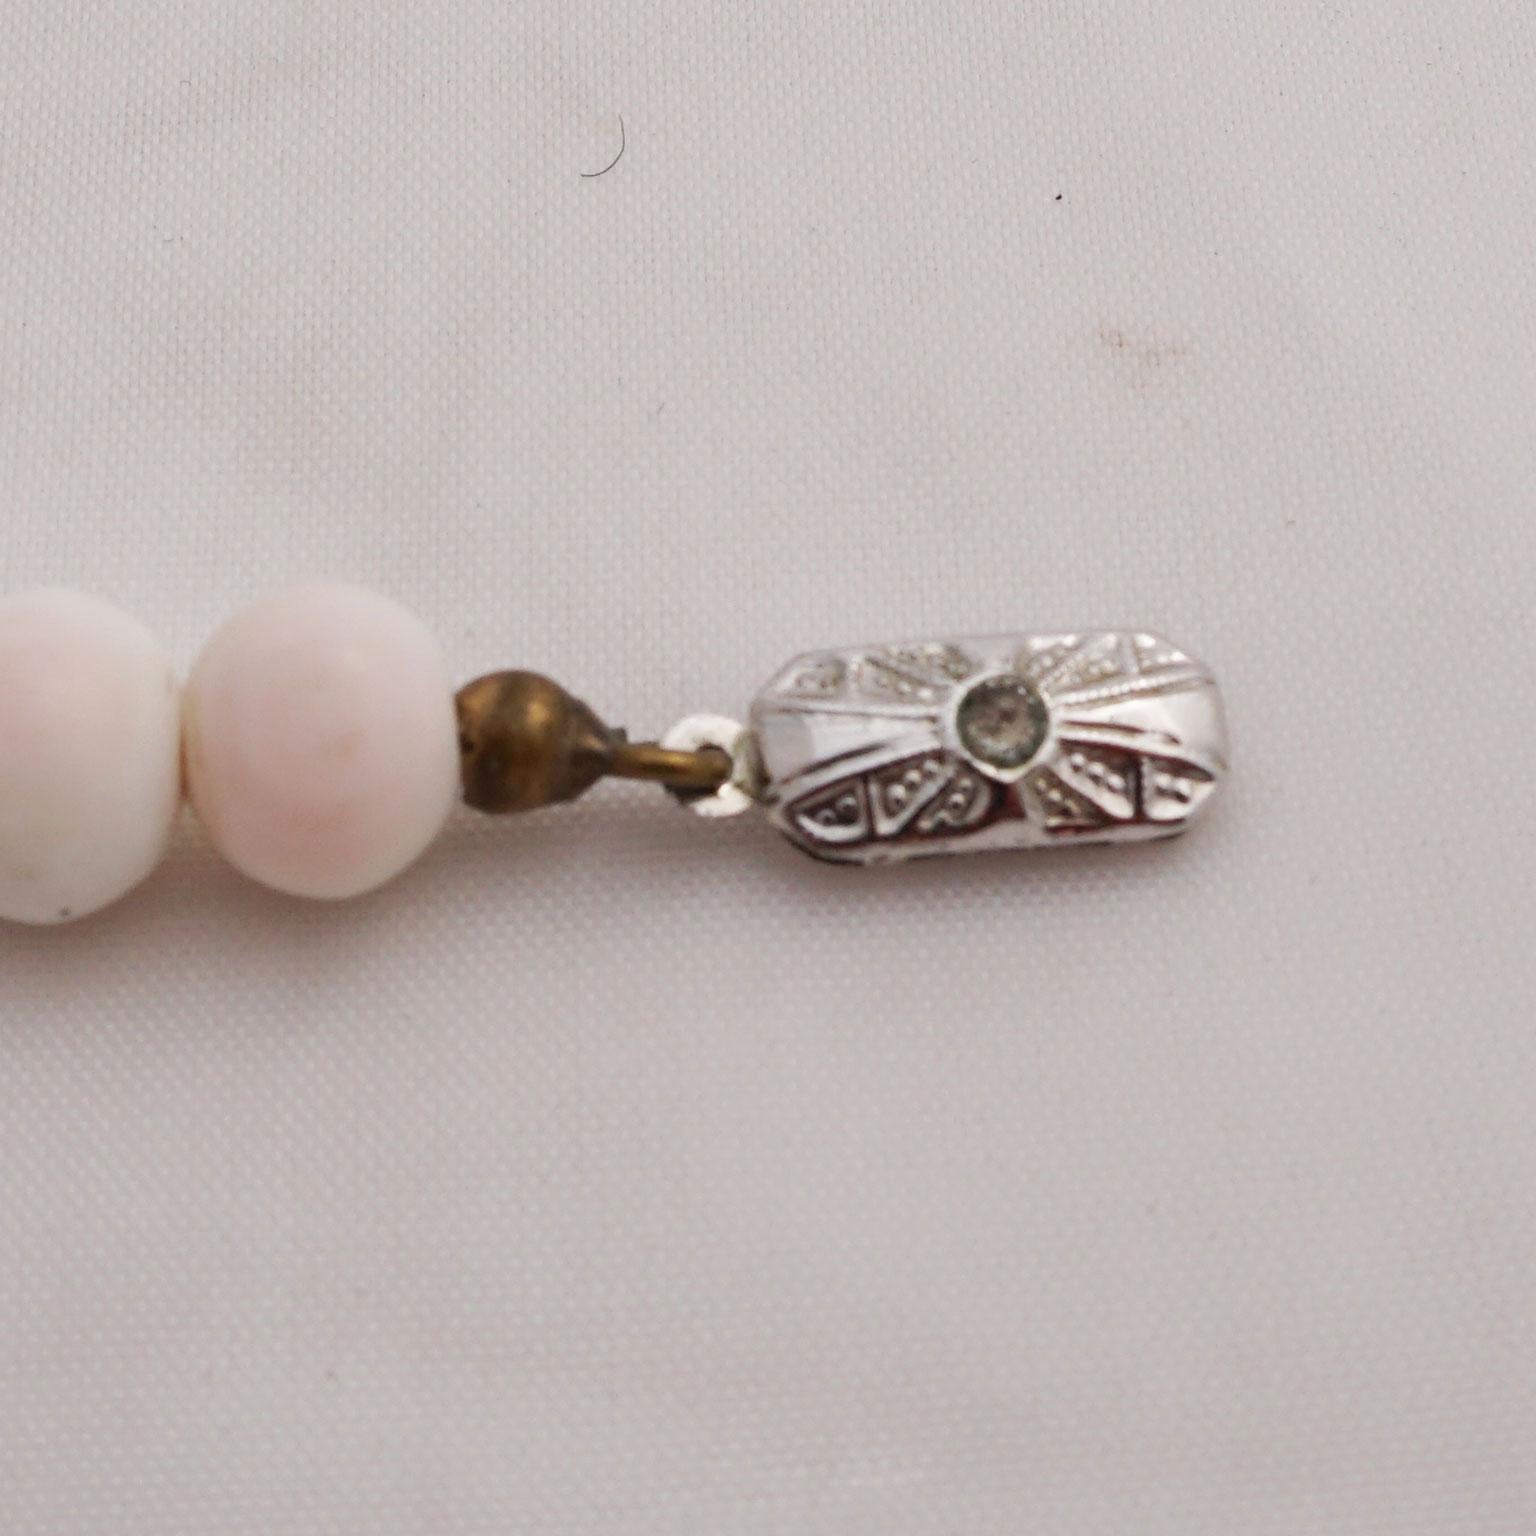 Collier ancien en perles de corail en peau d'ange 
Du blanc au rose pâle, telles sont les couleurs des perles de ce gracieux collier en corail. Les perles sont synchrones et finement taillées. L'origine se situe dans les années trente du siècle